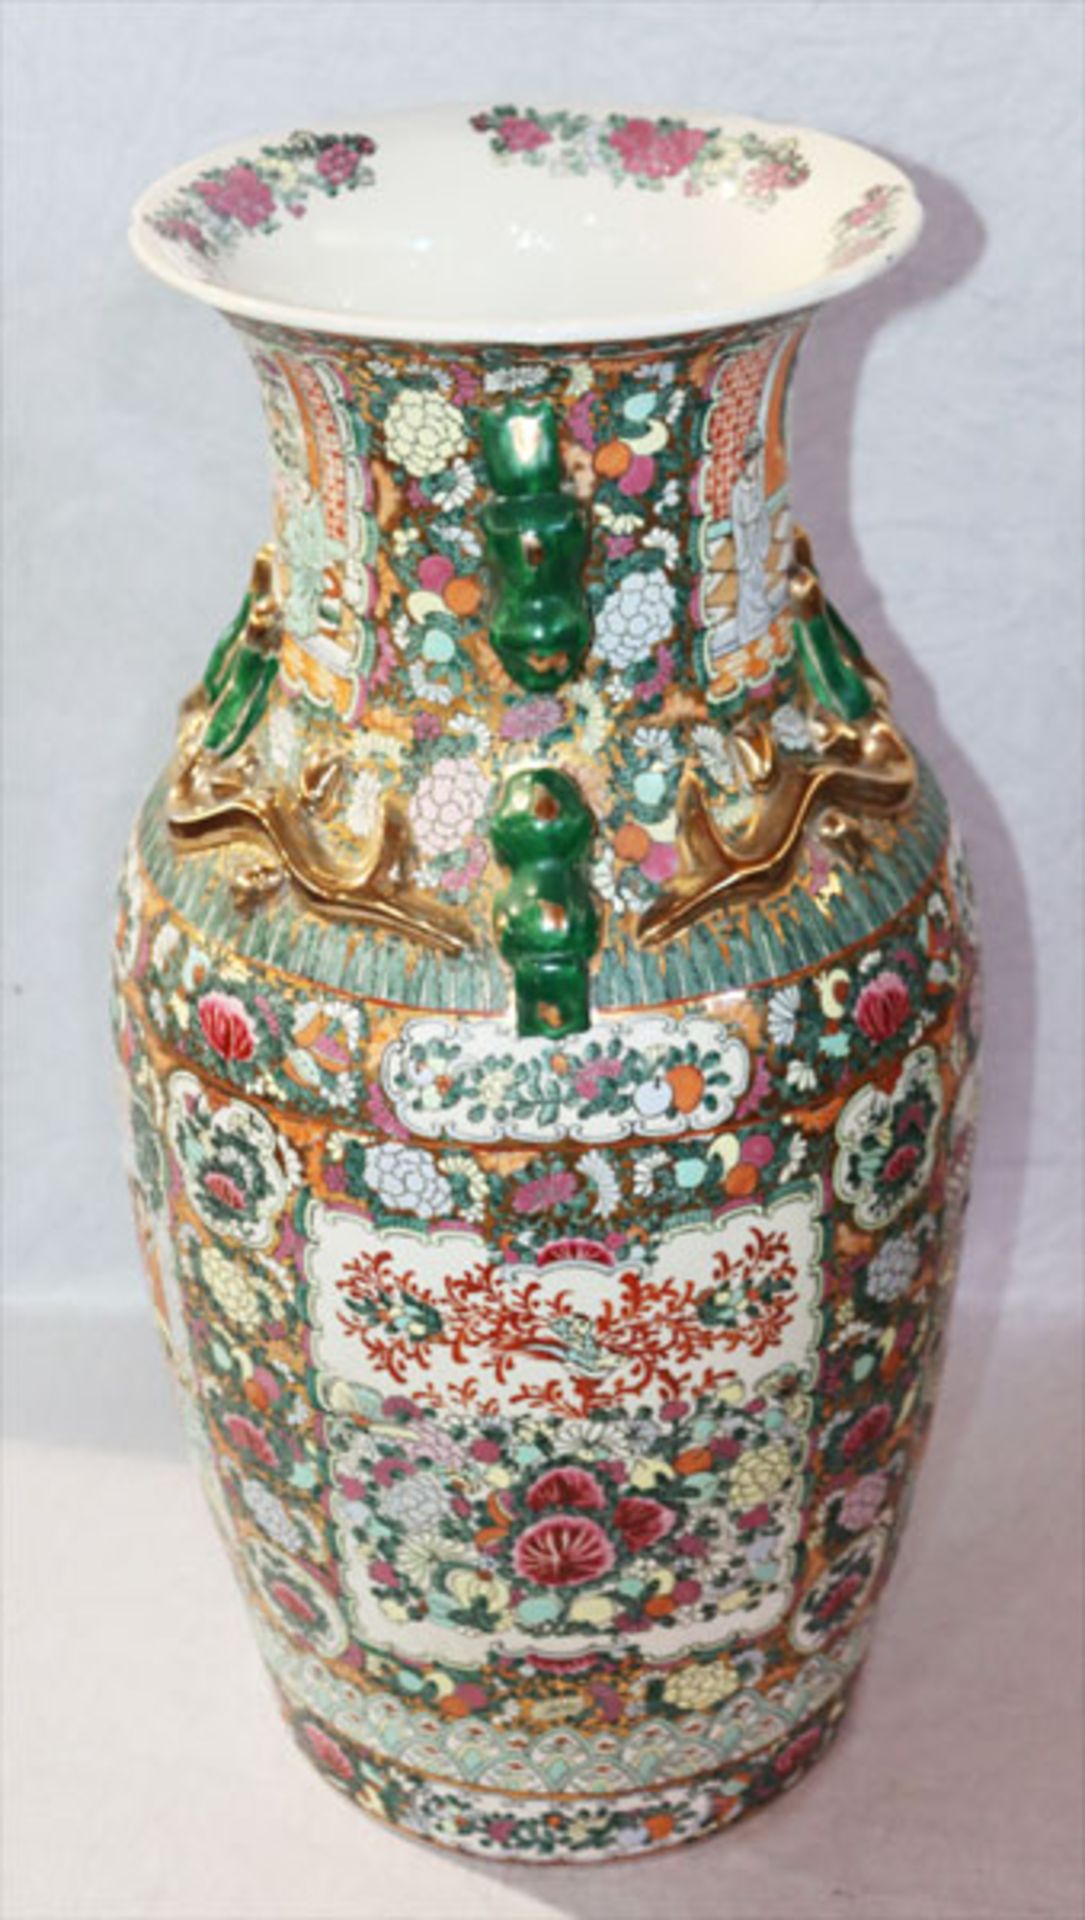 Chinesische Bodenvase mit reichem figürlichem und floralem Dekor, plastische Verzierungen, H 64